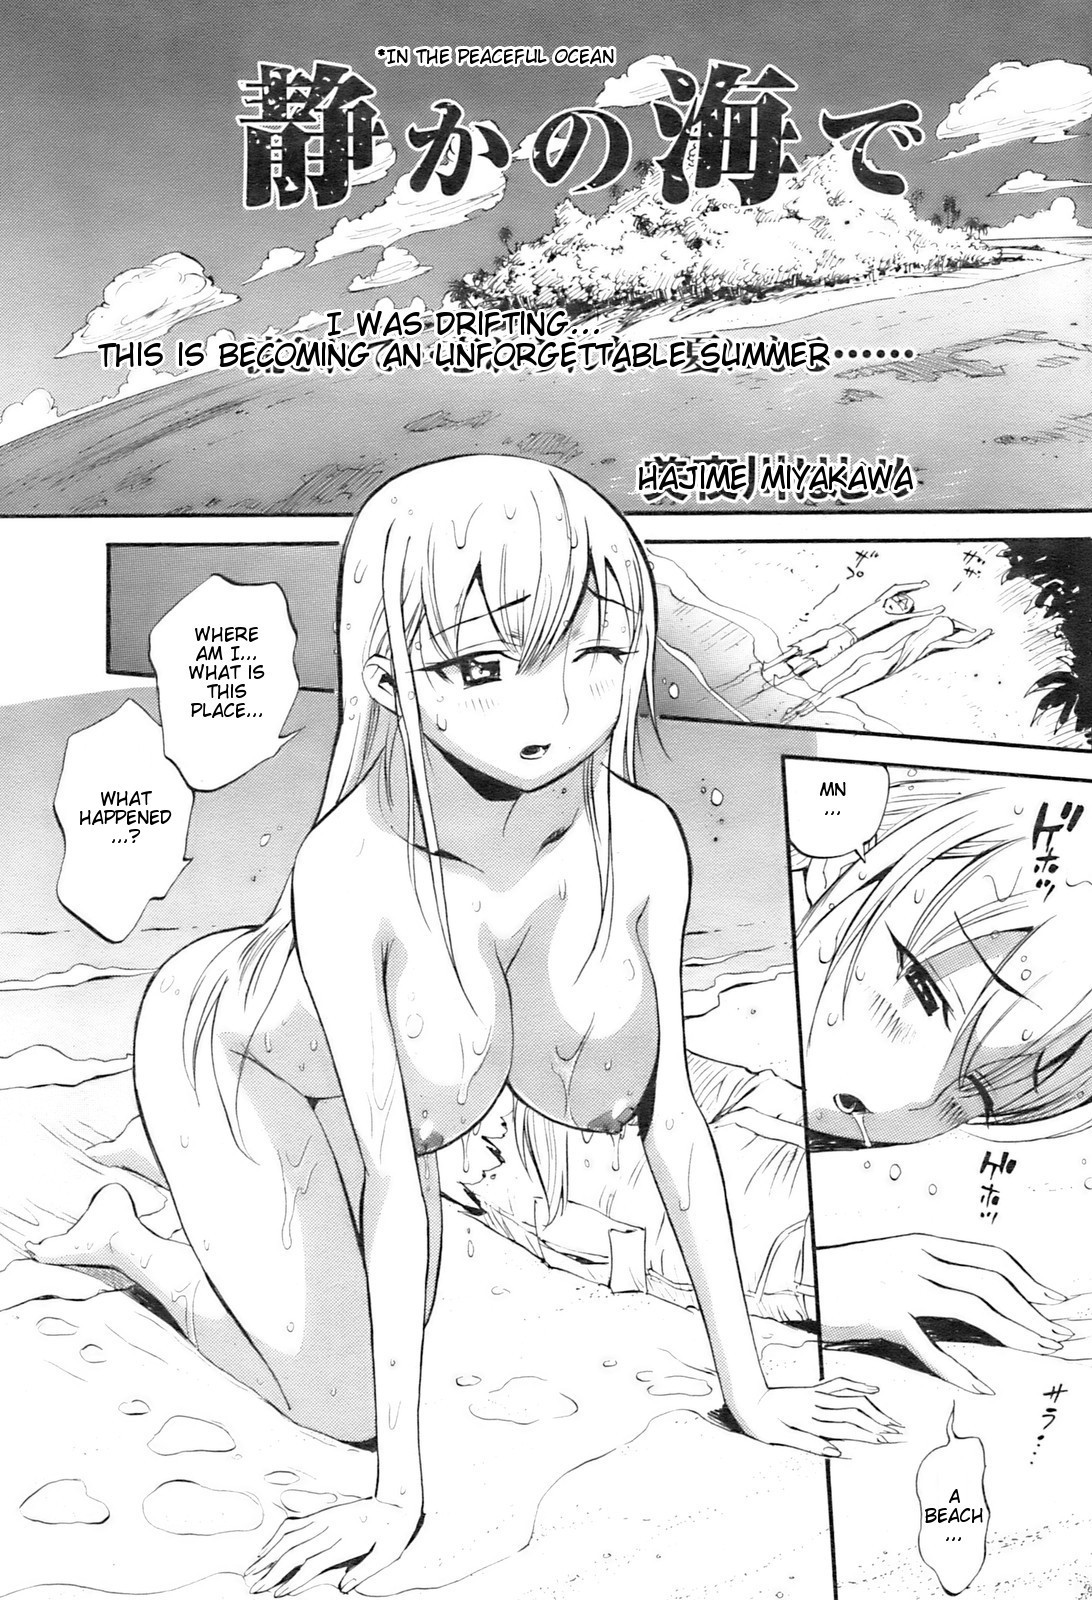 Hentai Manga Comic-In The Peaceful Ocean-Read-1